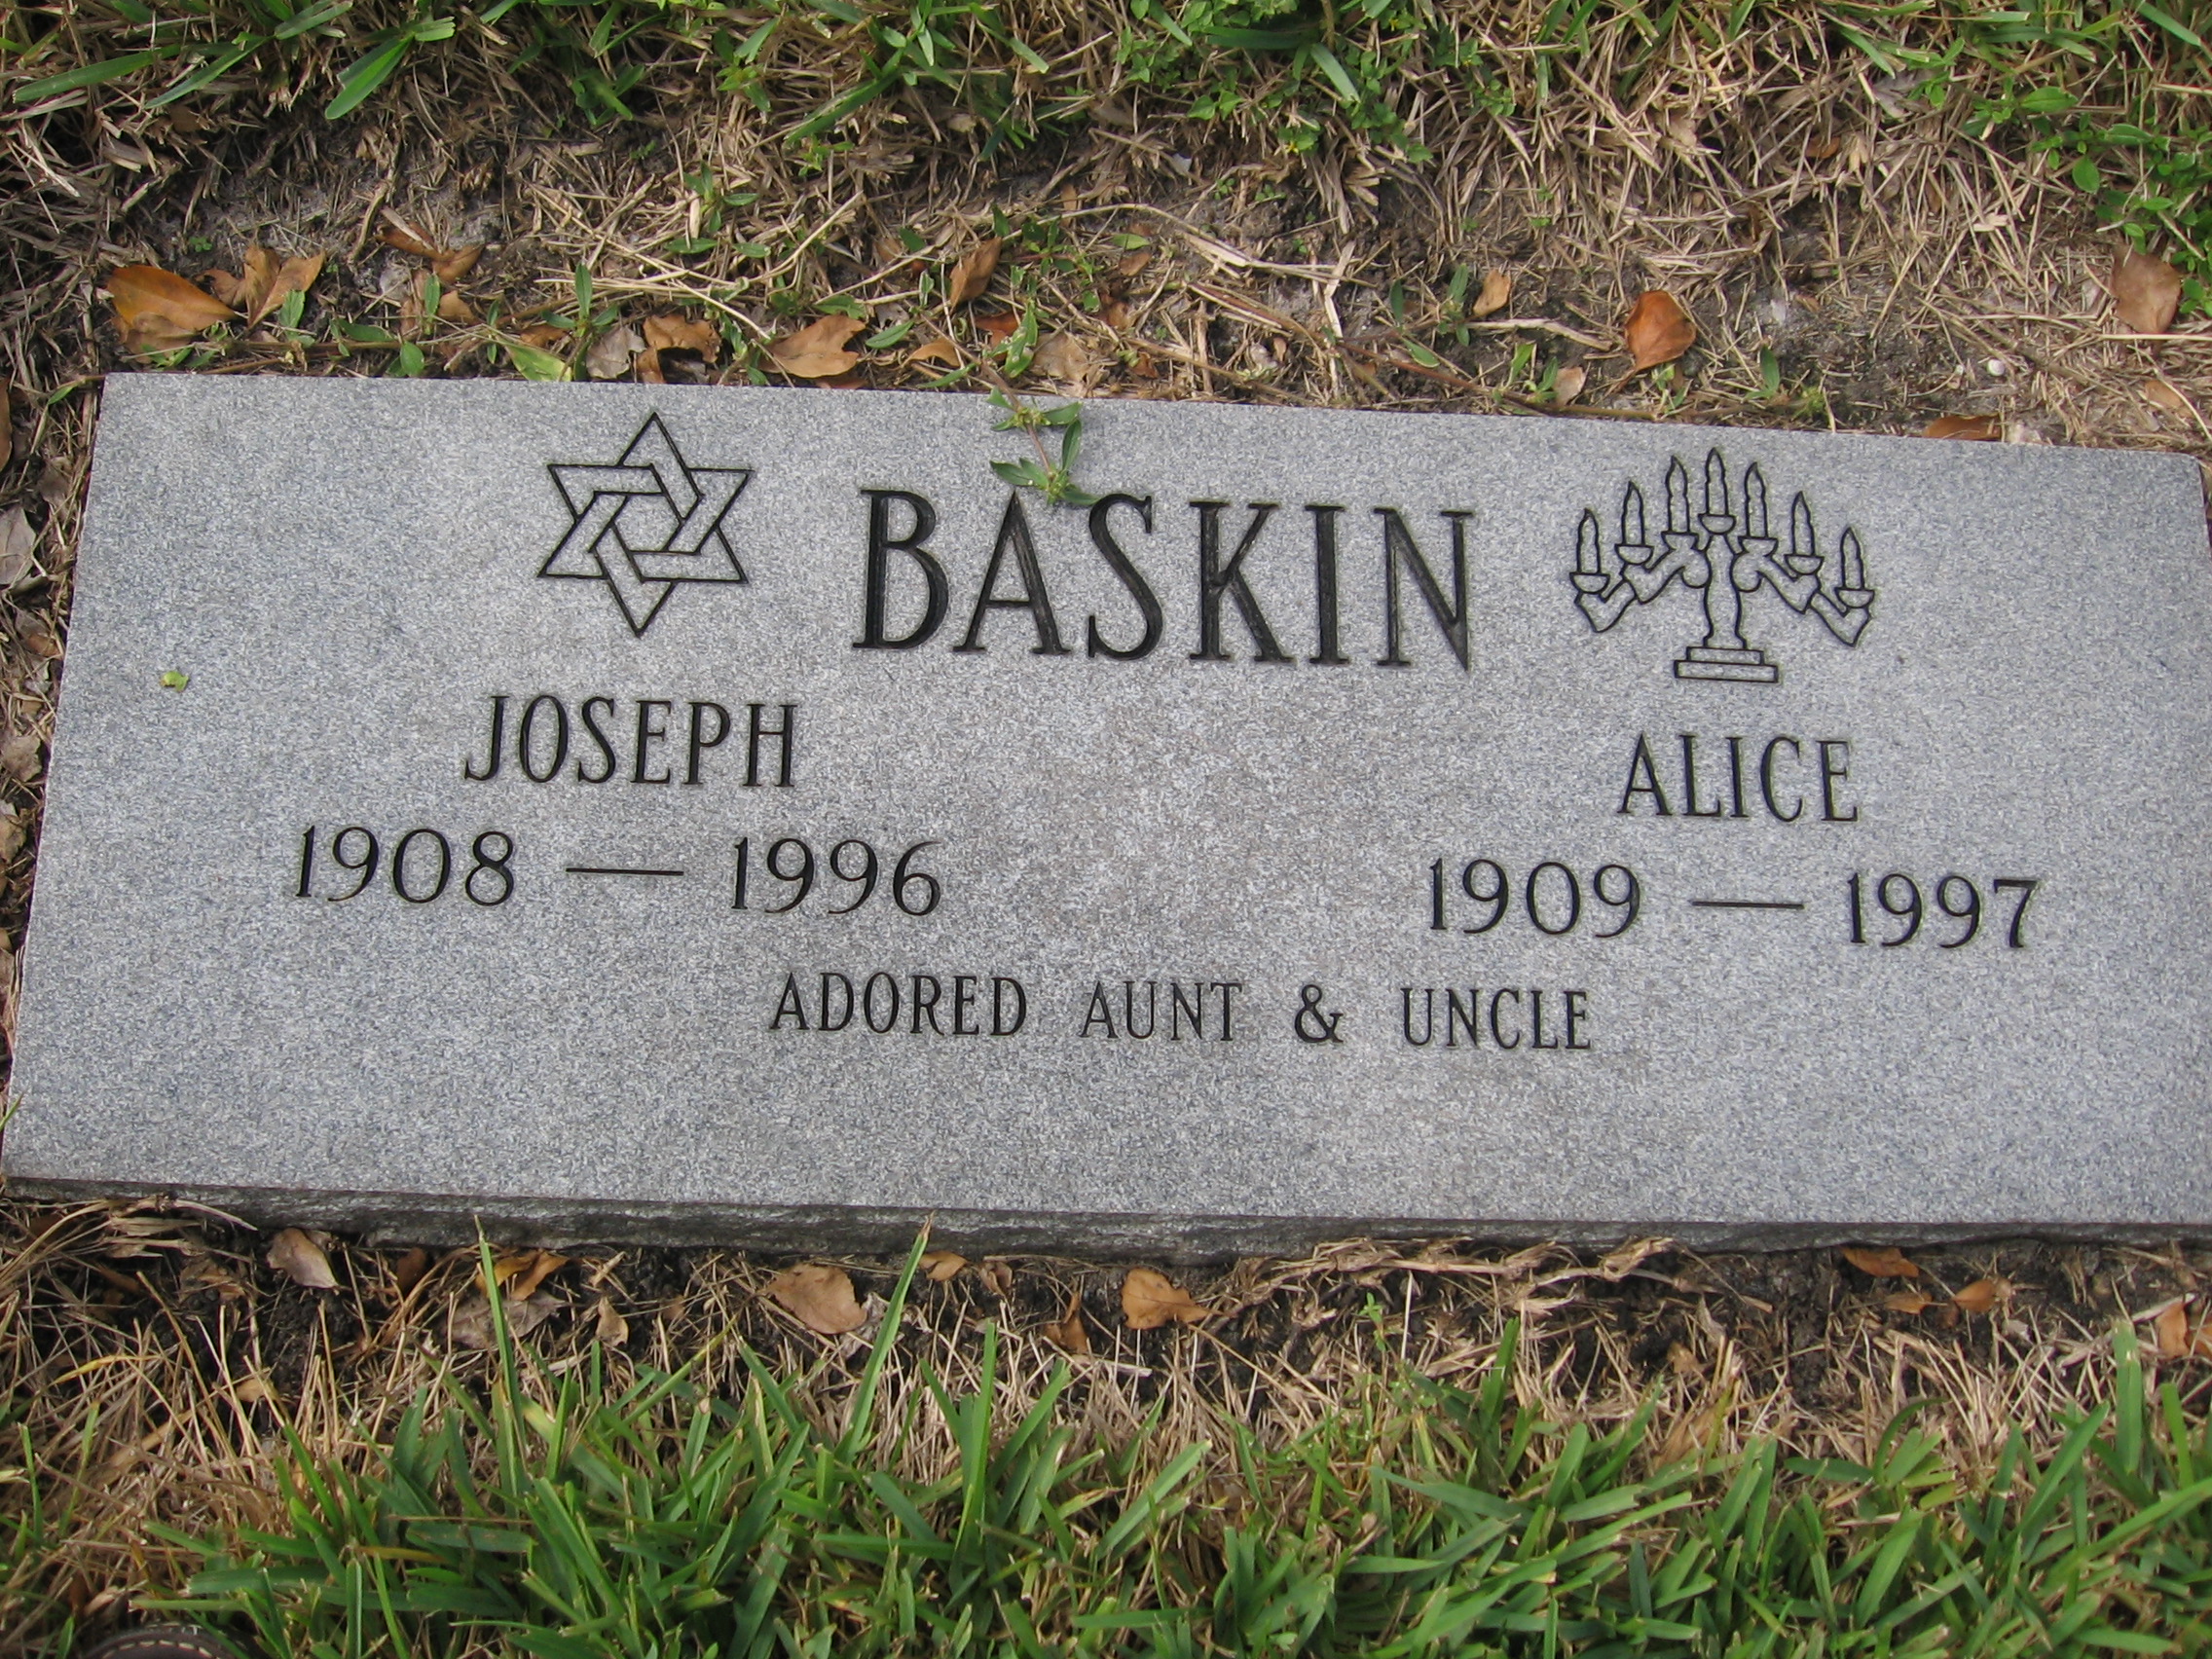 Joseph Baskin